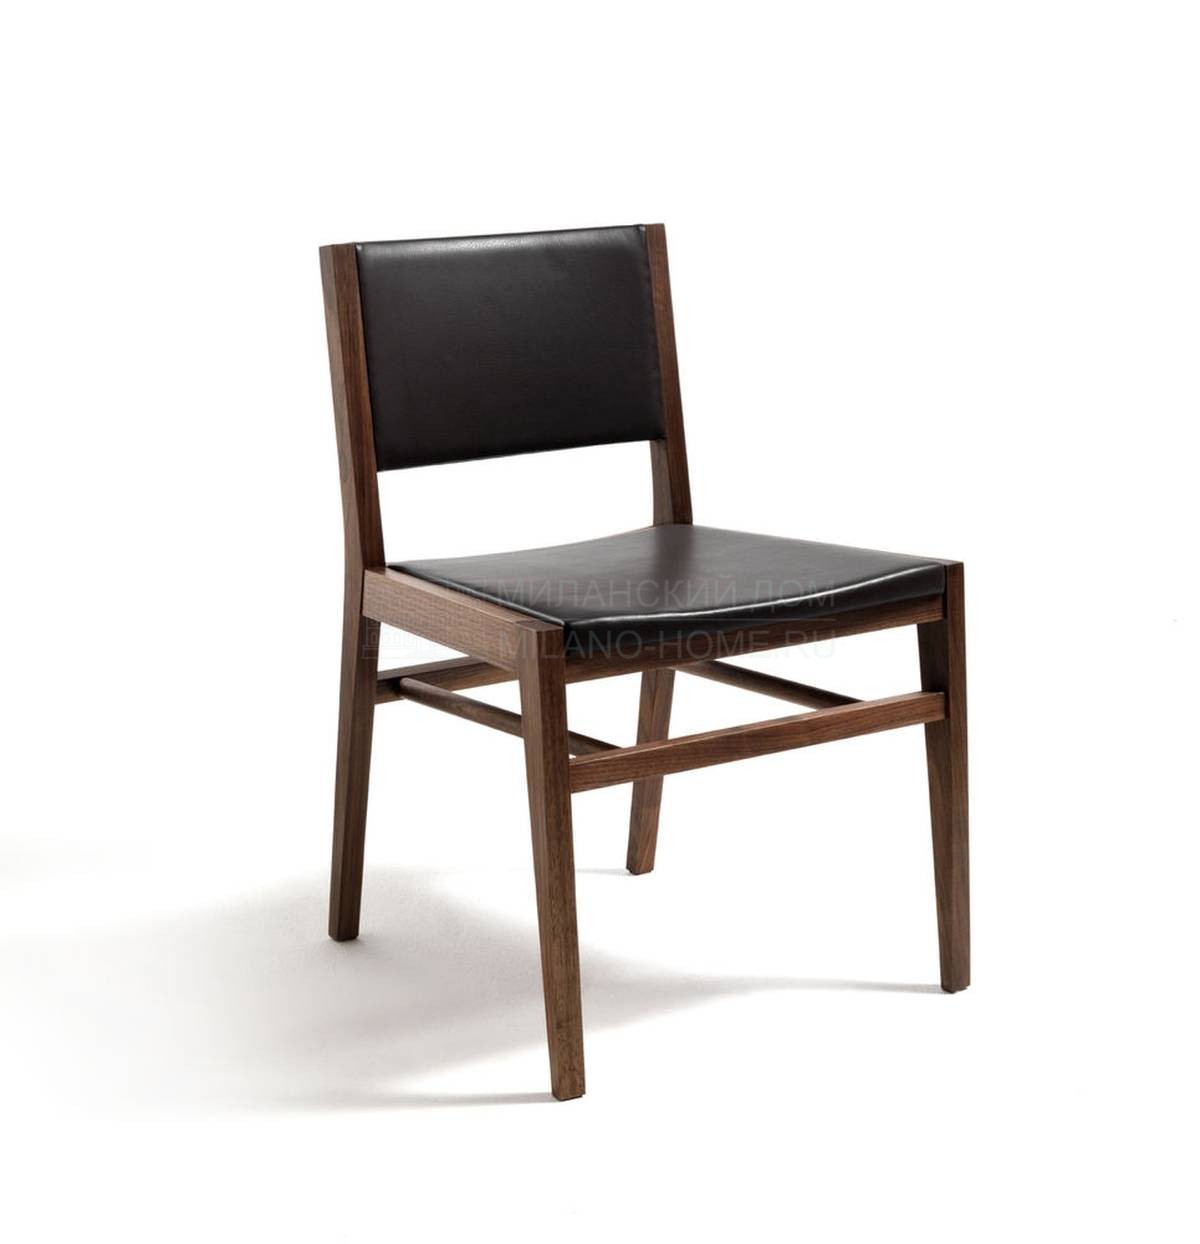 Стул Tennesse Leather/chair из Италии фабрики RIVA1920